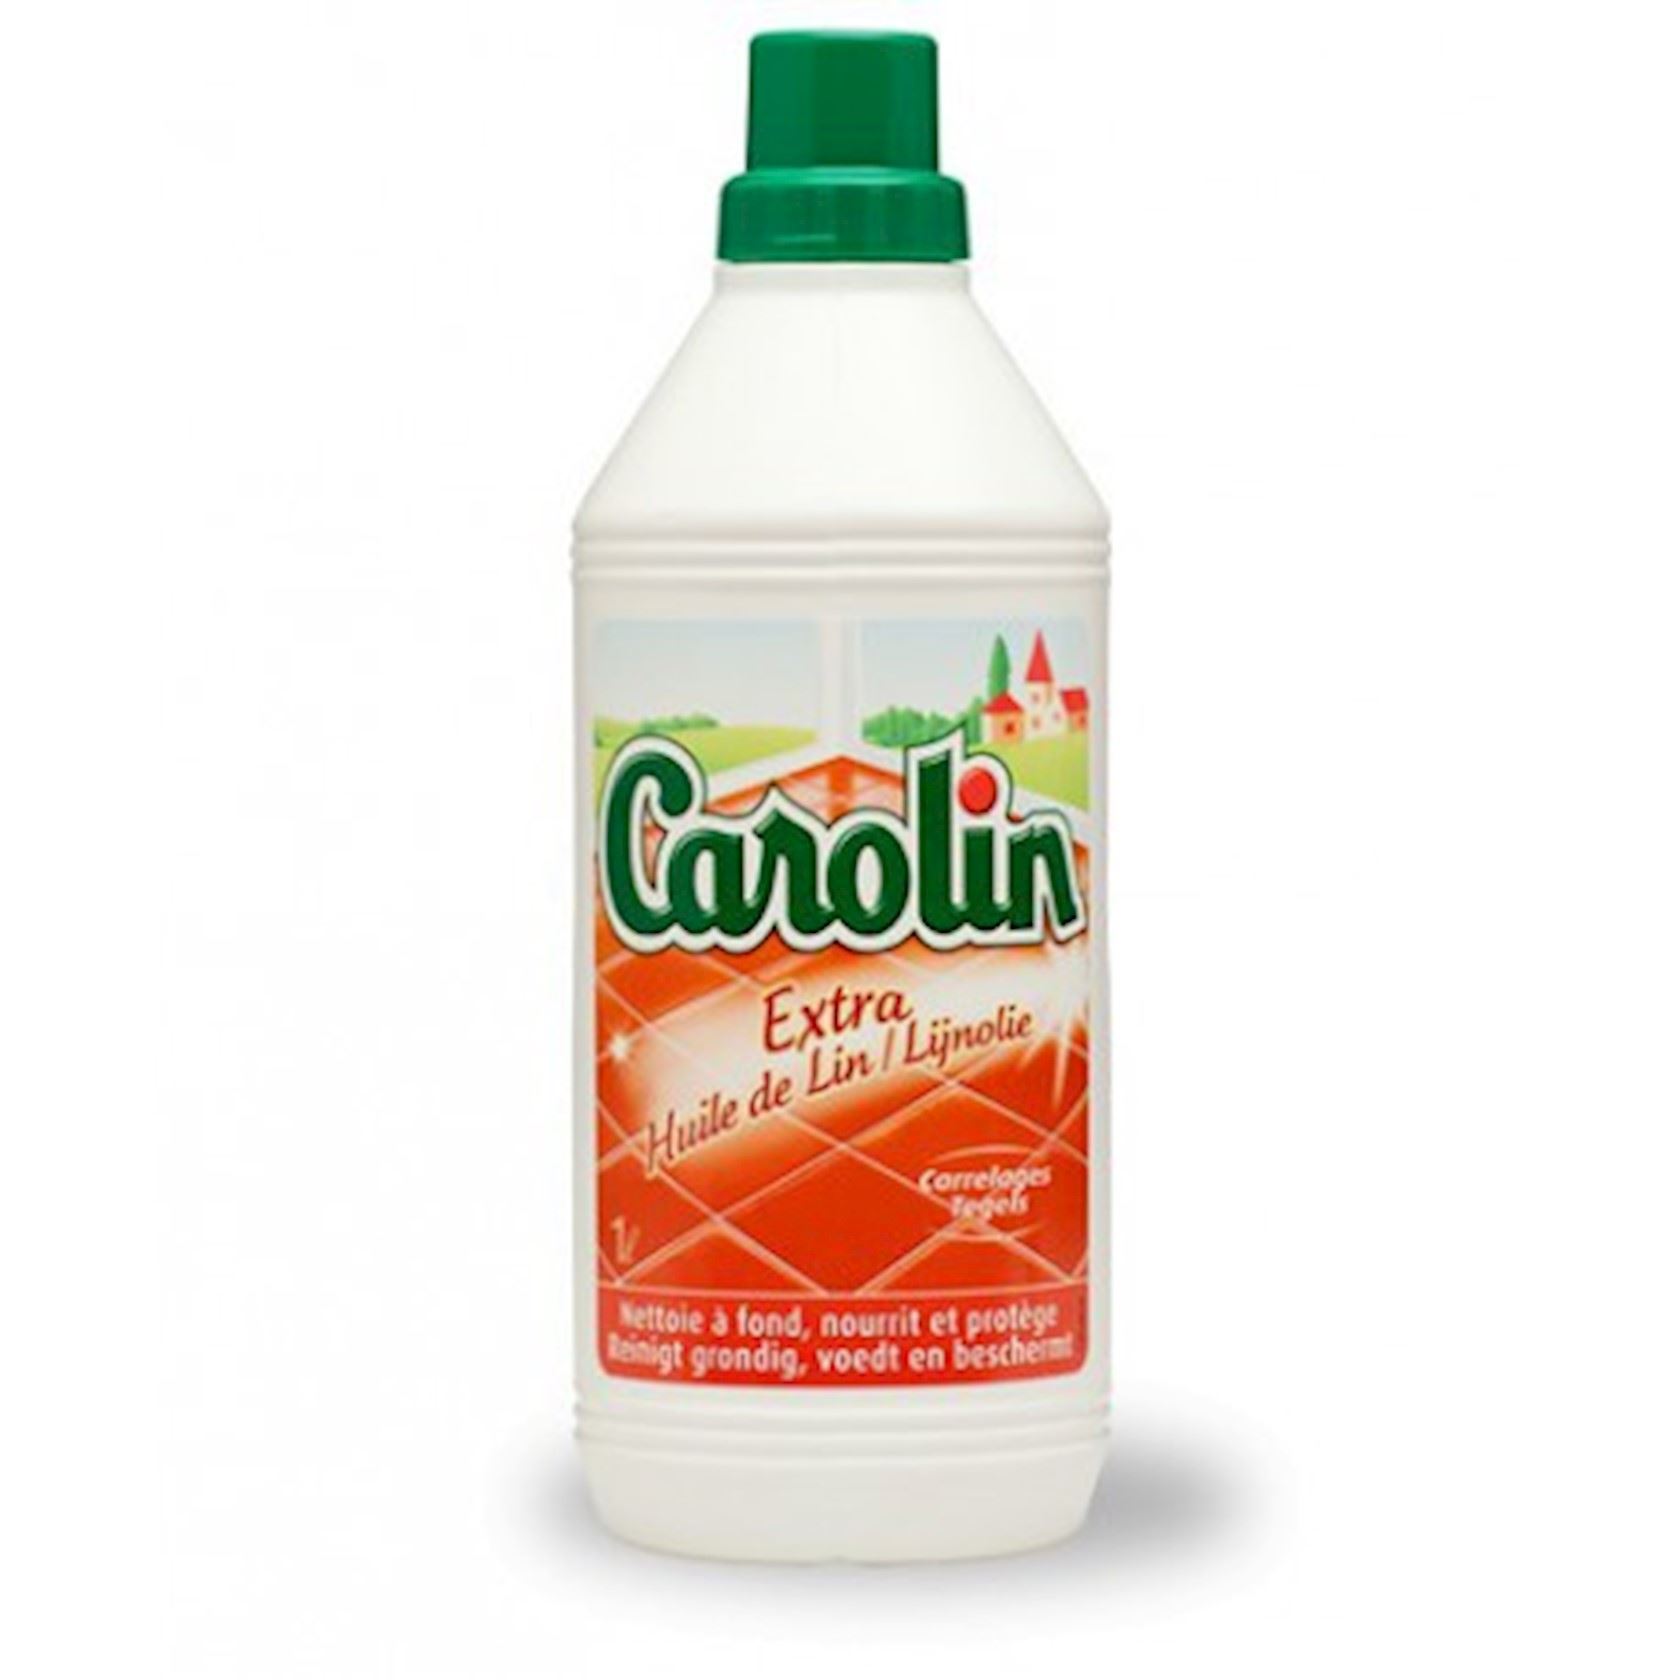 Carolin-vloerreiniger-1l-lijnolie